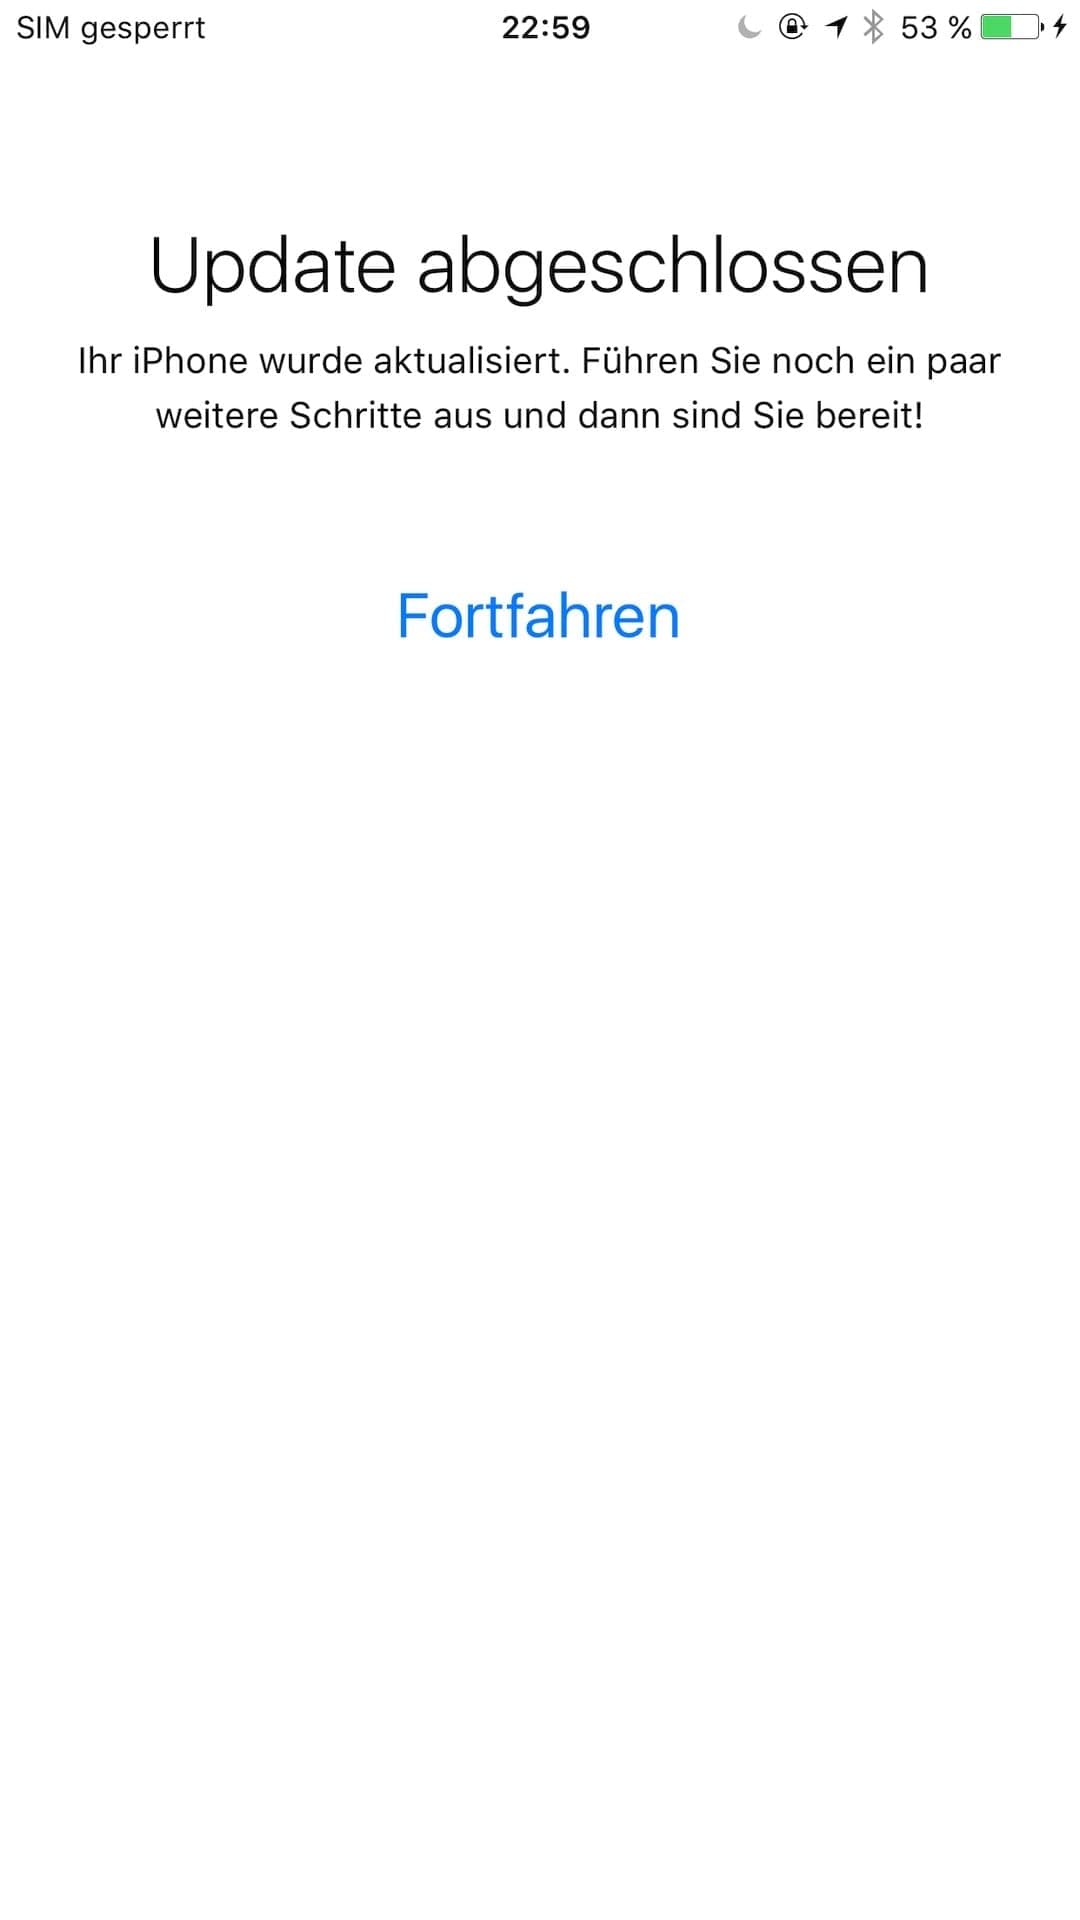 Bildschirmfoto: Softwareaktualisierung auf iOS Version 9.3 wird angeboten